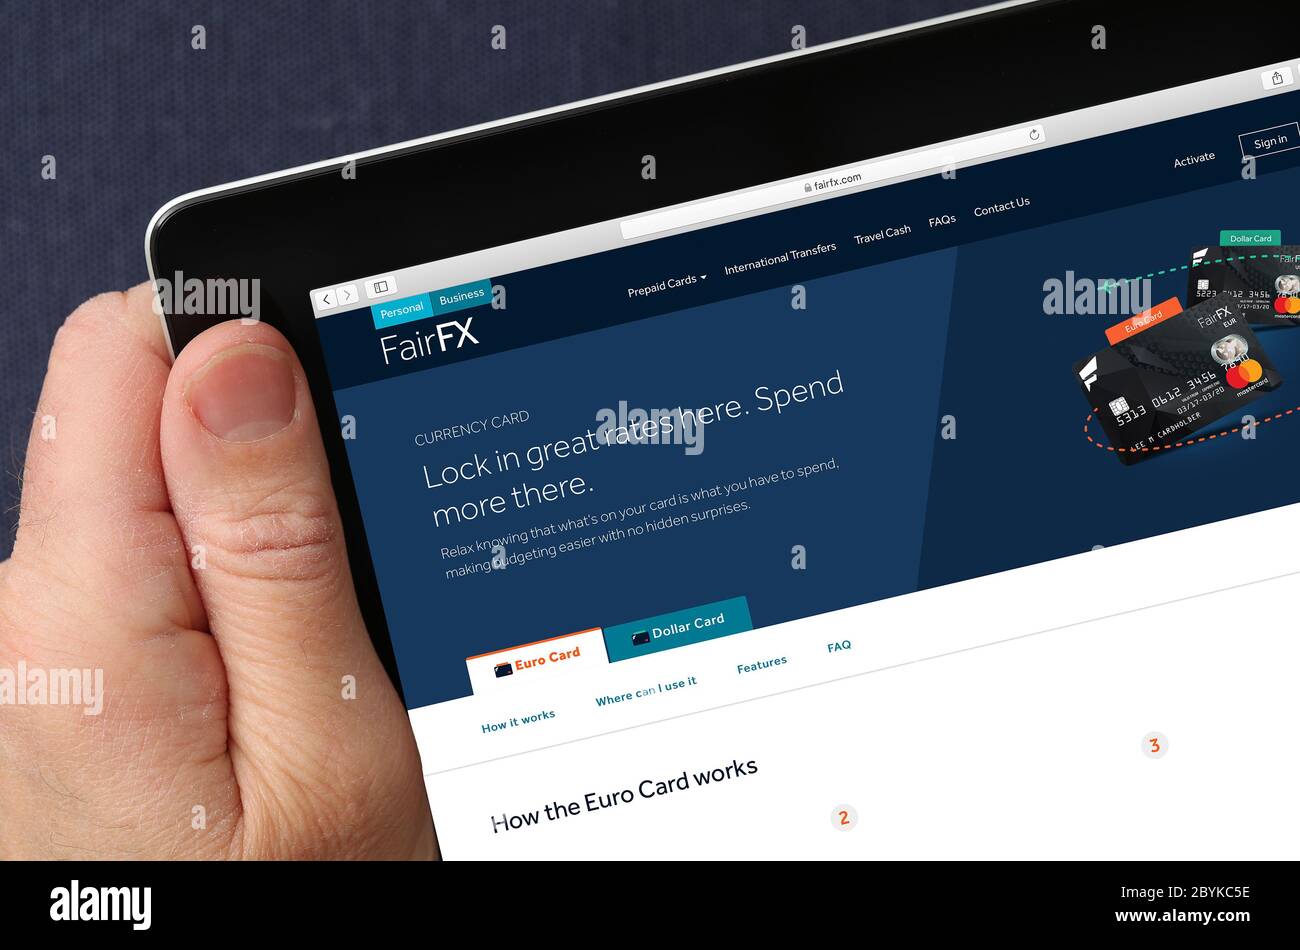 Site Web Fair FX, affiché sur un iPad. (usage éditorial uniquement) Banque D'Images